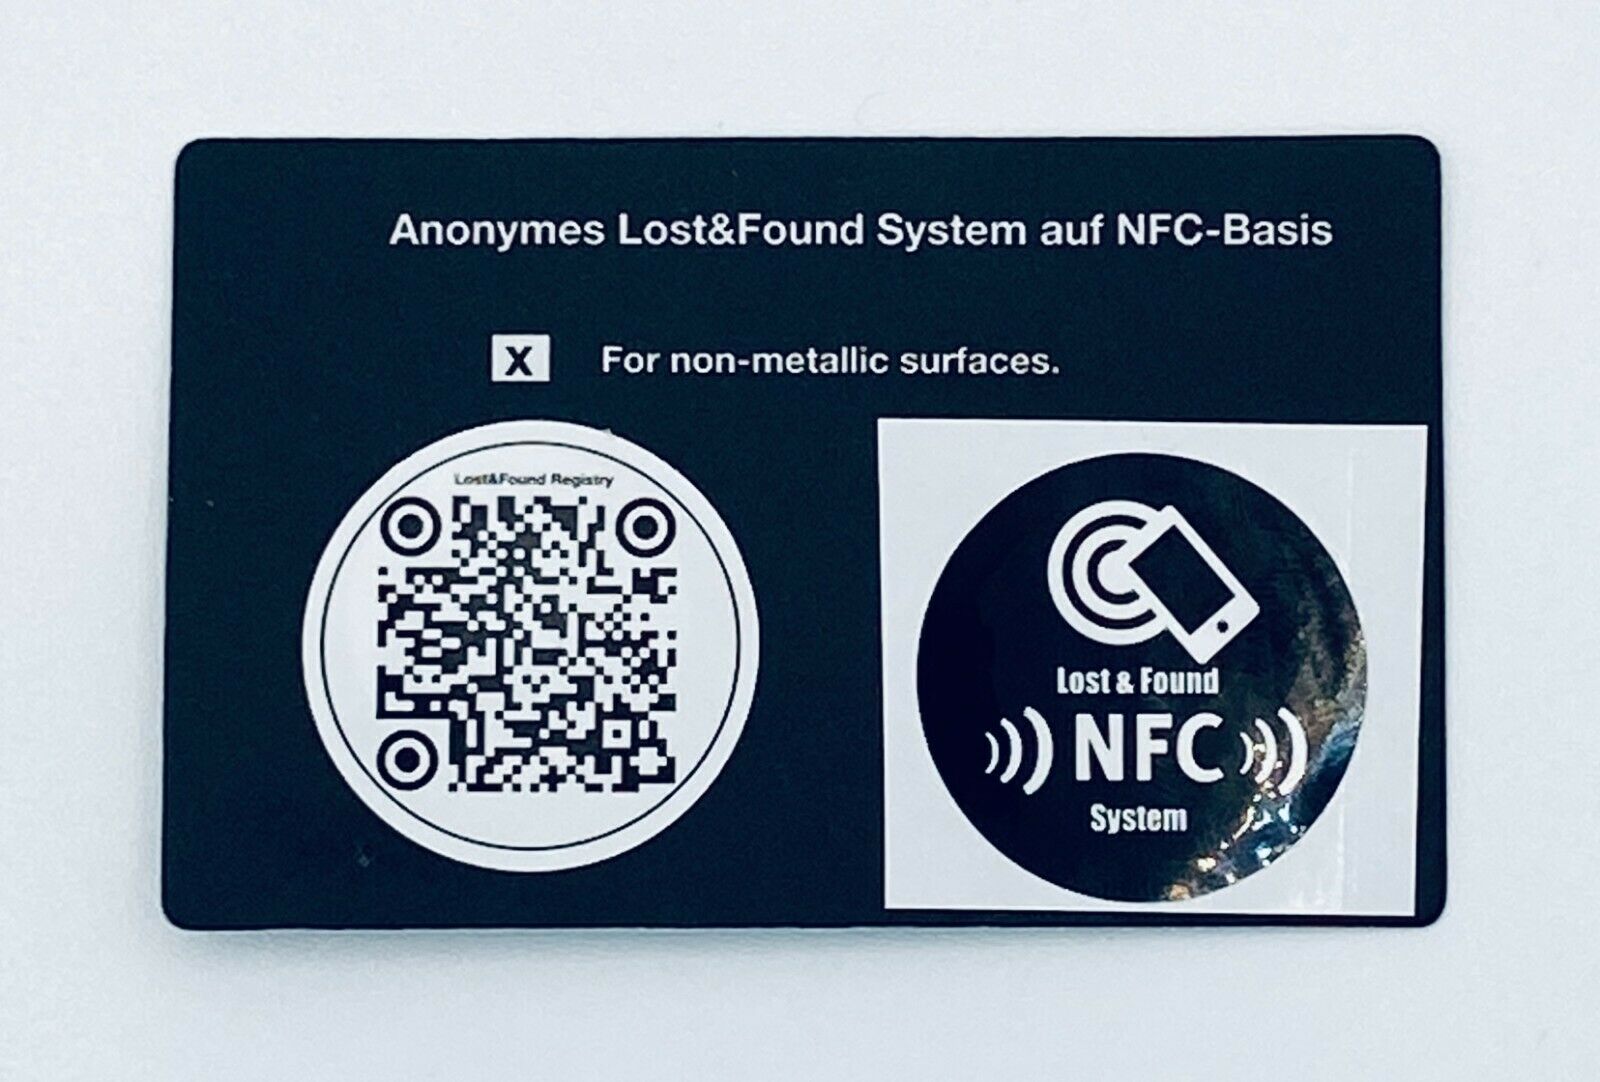 1 x NFC-NTAG215 Sticker Set als Lost&Found System